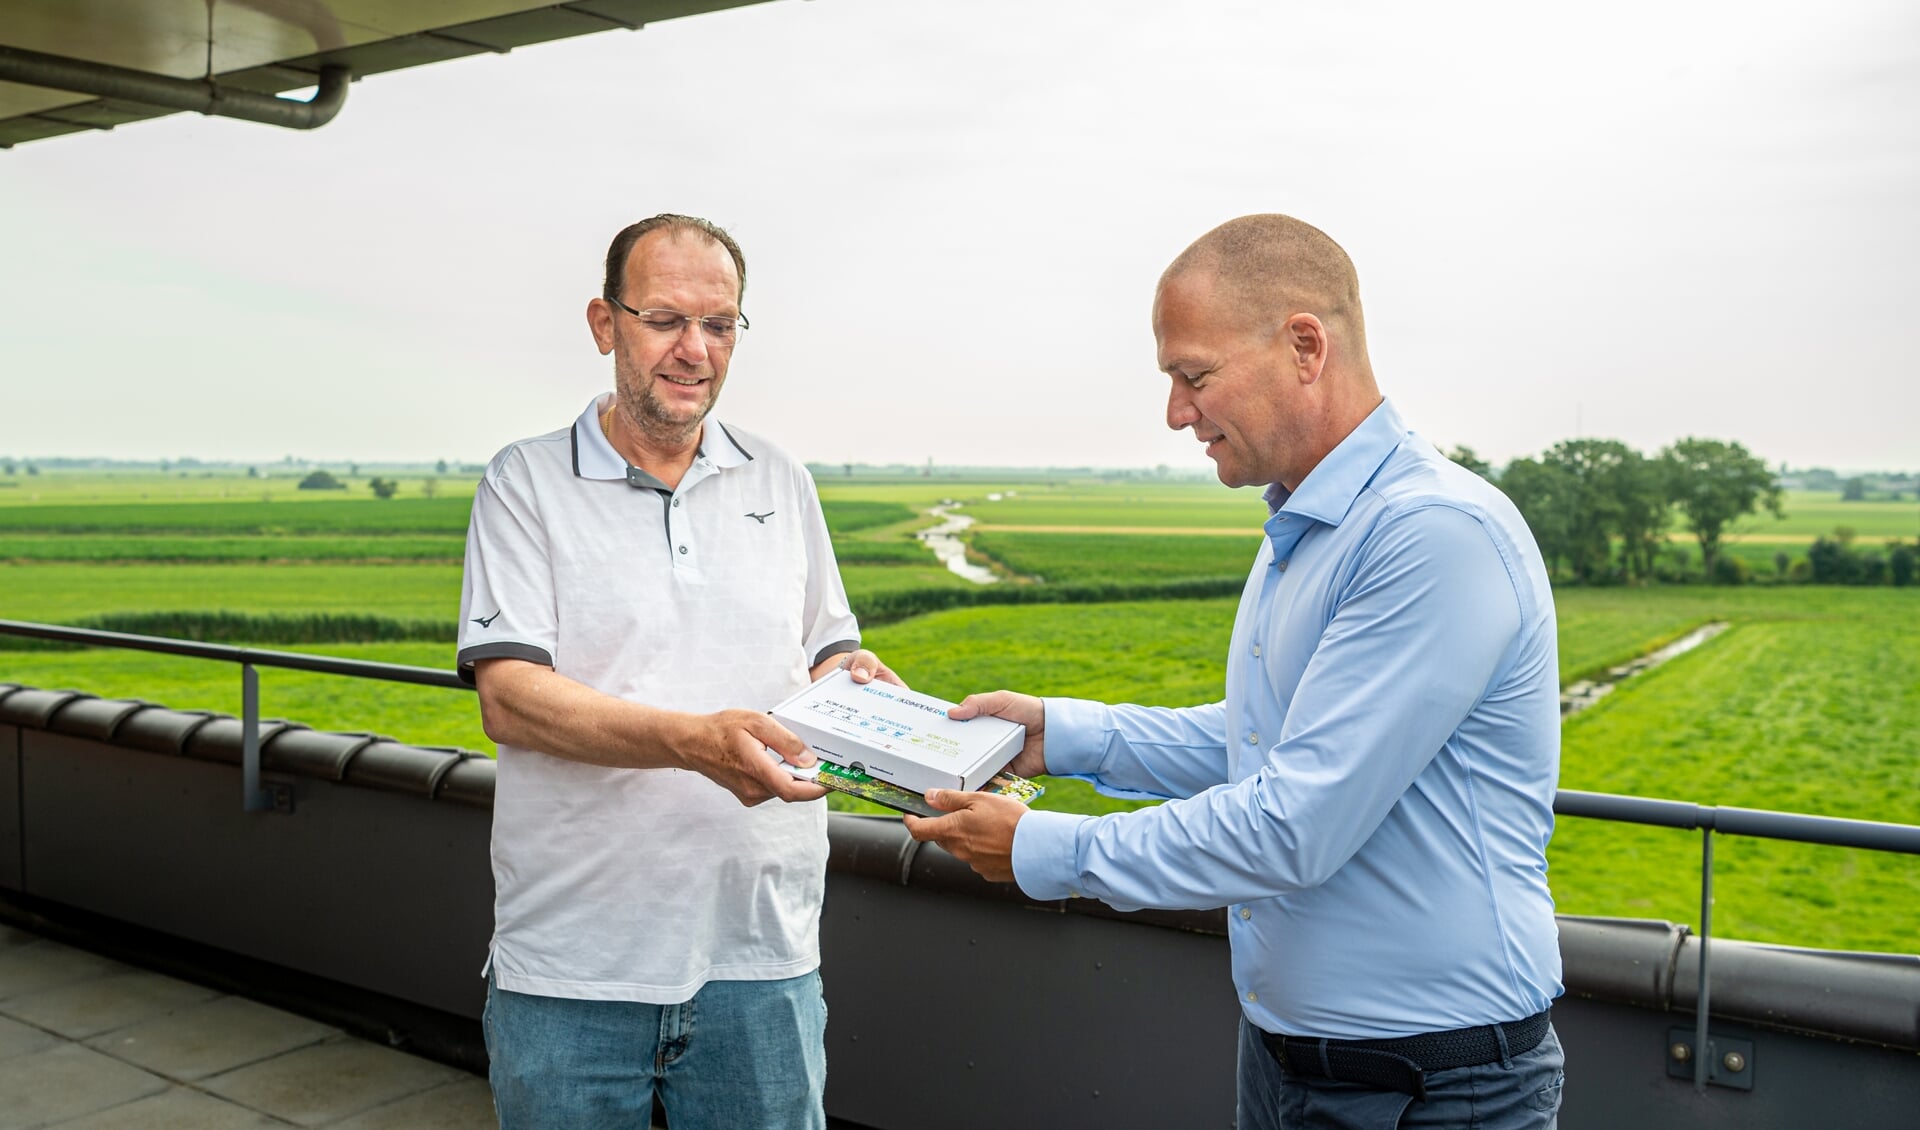 • Namens Stichting Promotie Krimpenerwaard en Zilverstad Marketing overhandigt Stefan van Beeten de nieuwe Welkomstbox aan Wilfred Rottier.